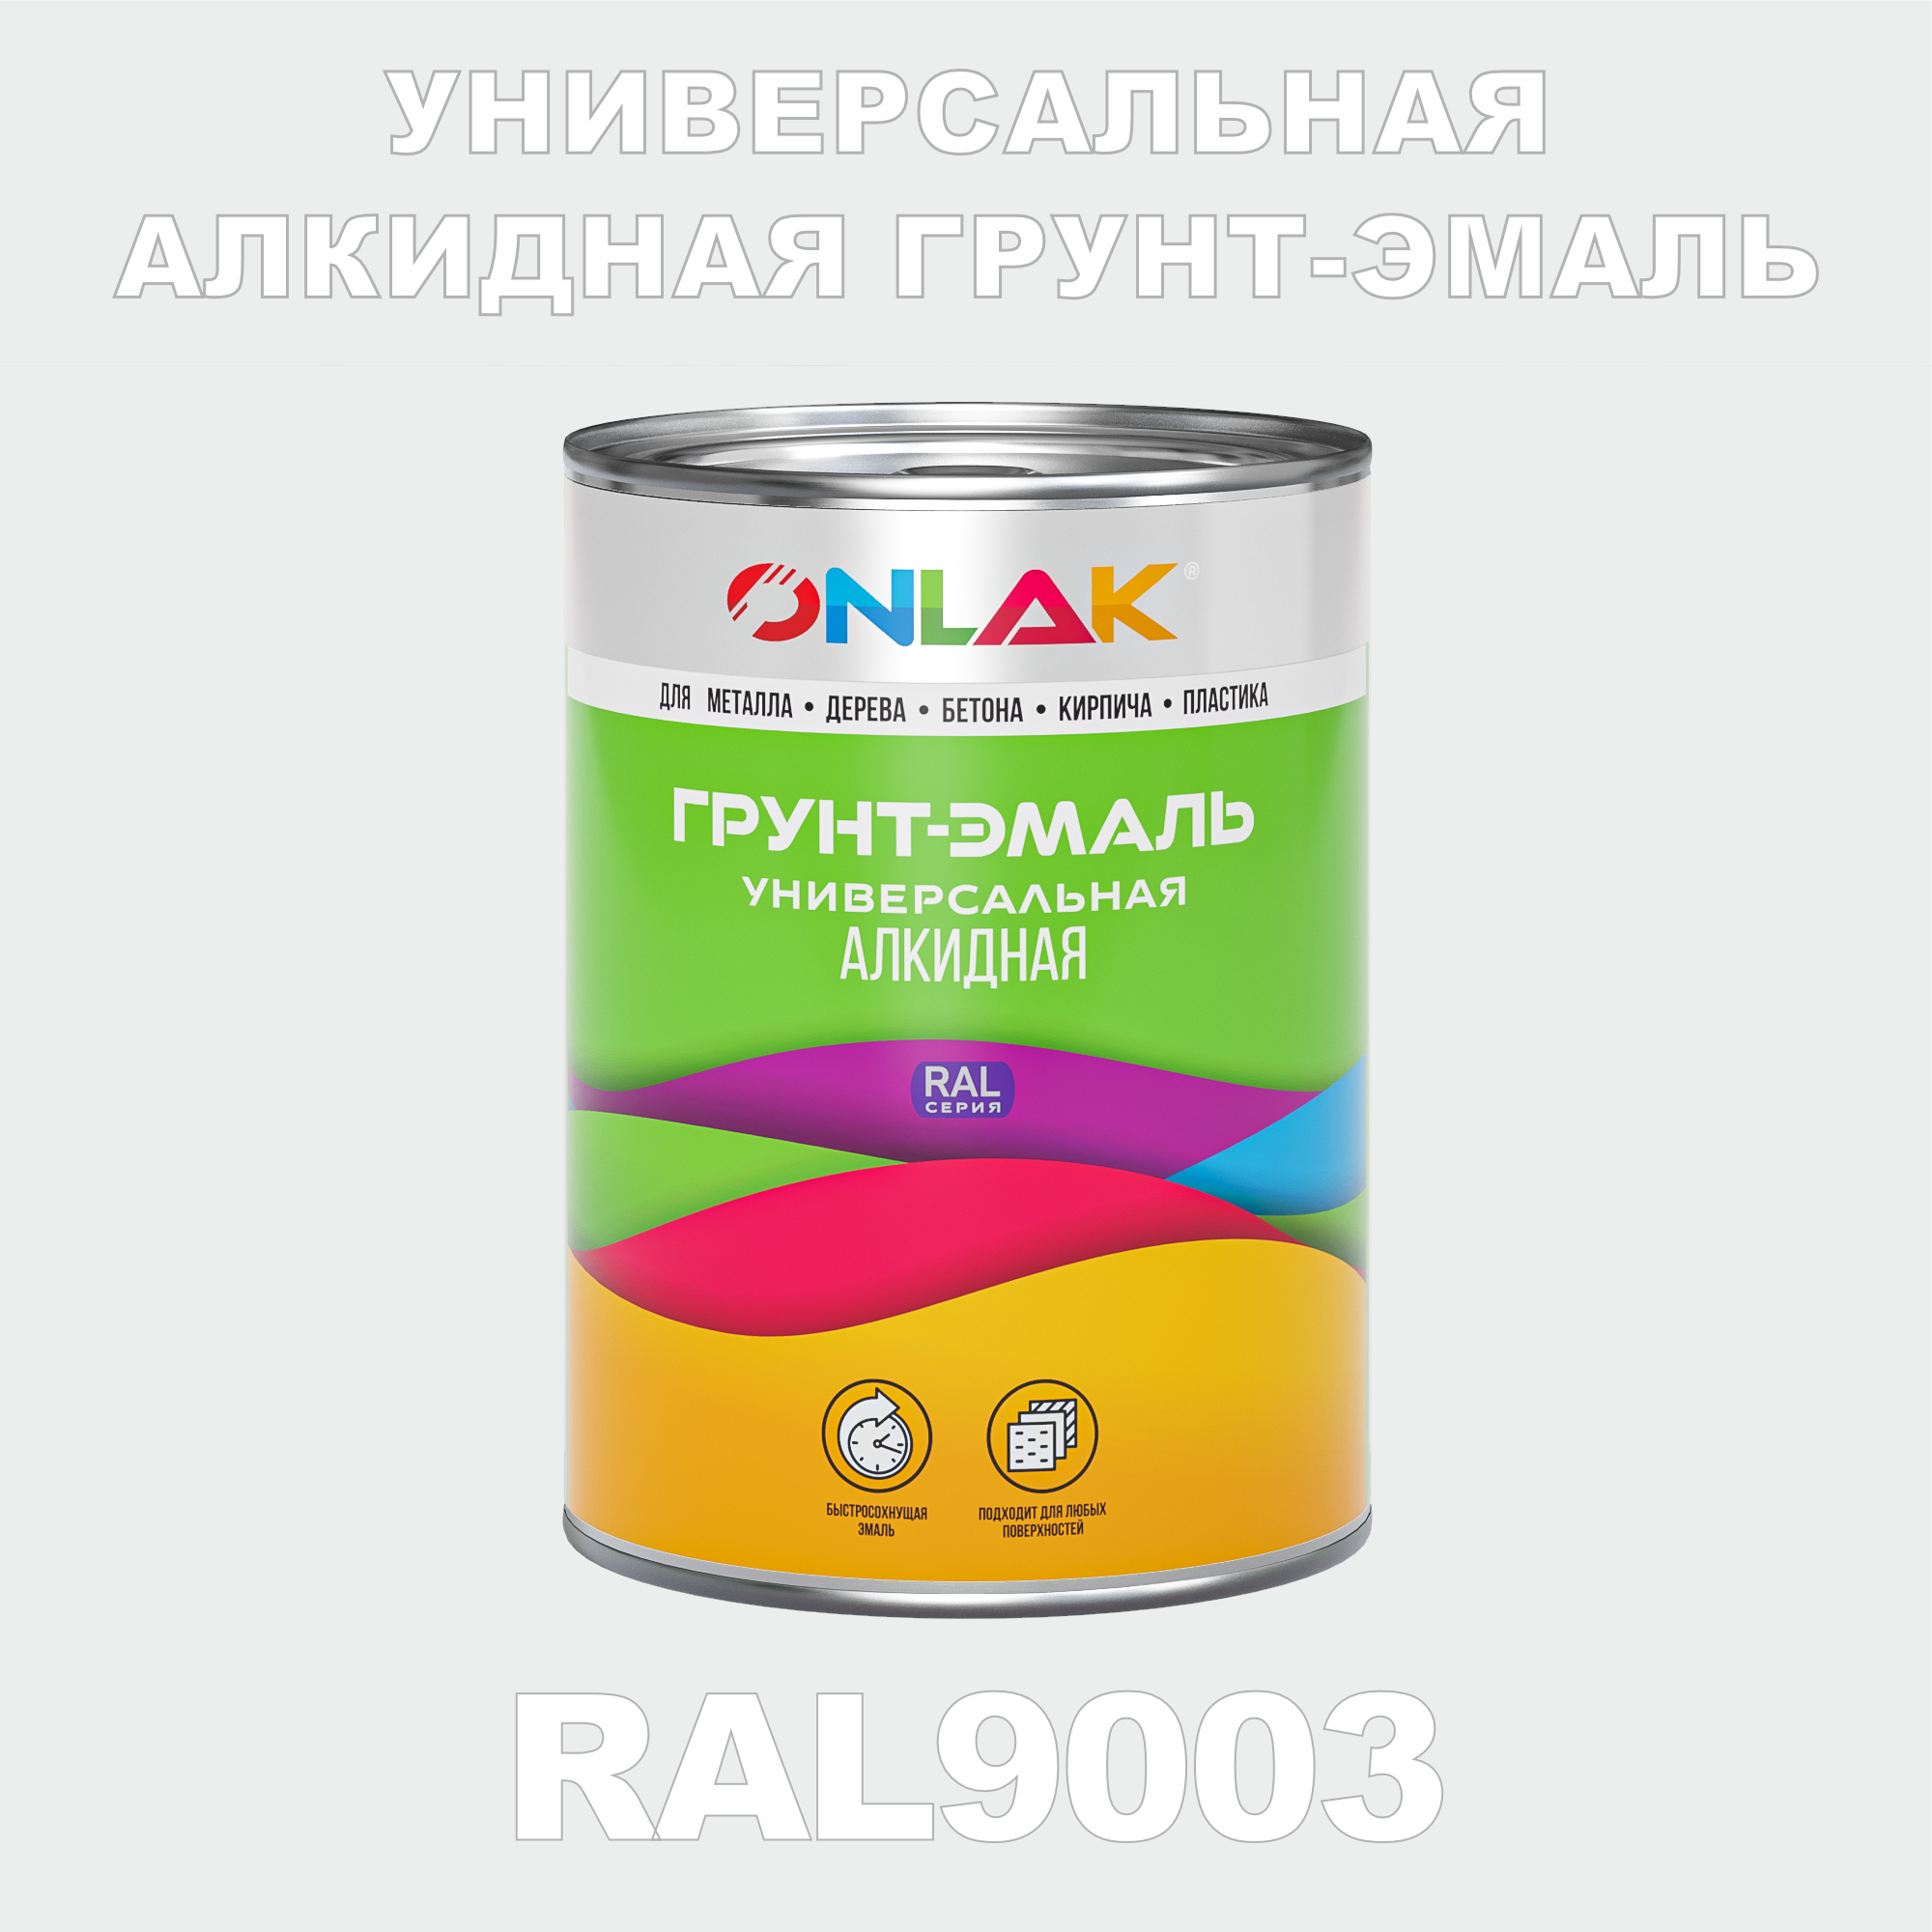 Грунт-эмаль ONLAK 1К RAL9003 антикоррозионная алкидная по металлу по ржавчине 1 кг грунт эмаль yollo по ржавчине алкидная зеленая 0 9 кг